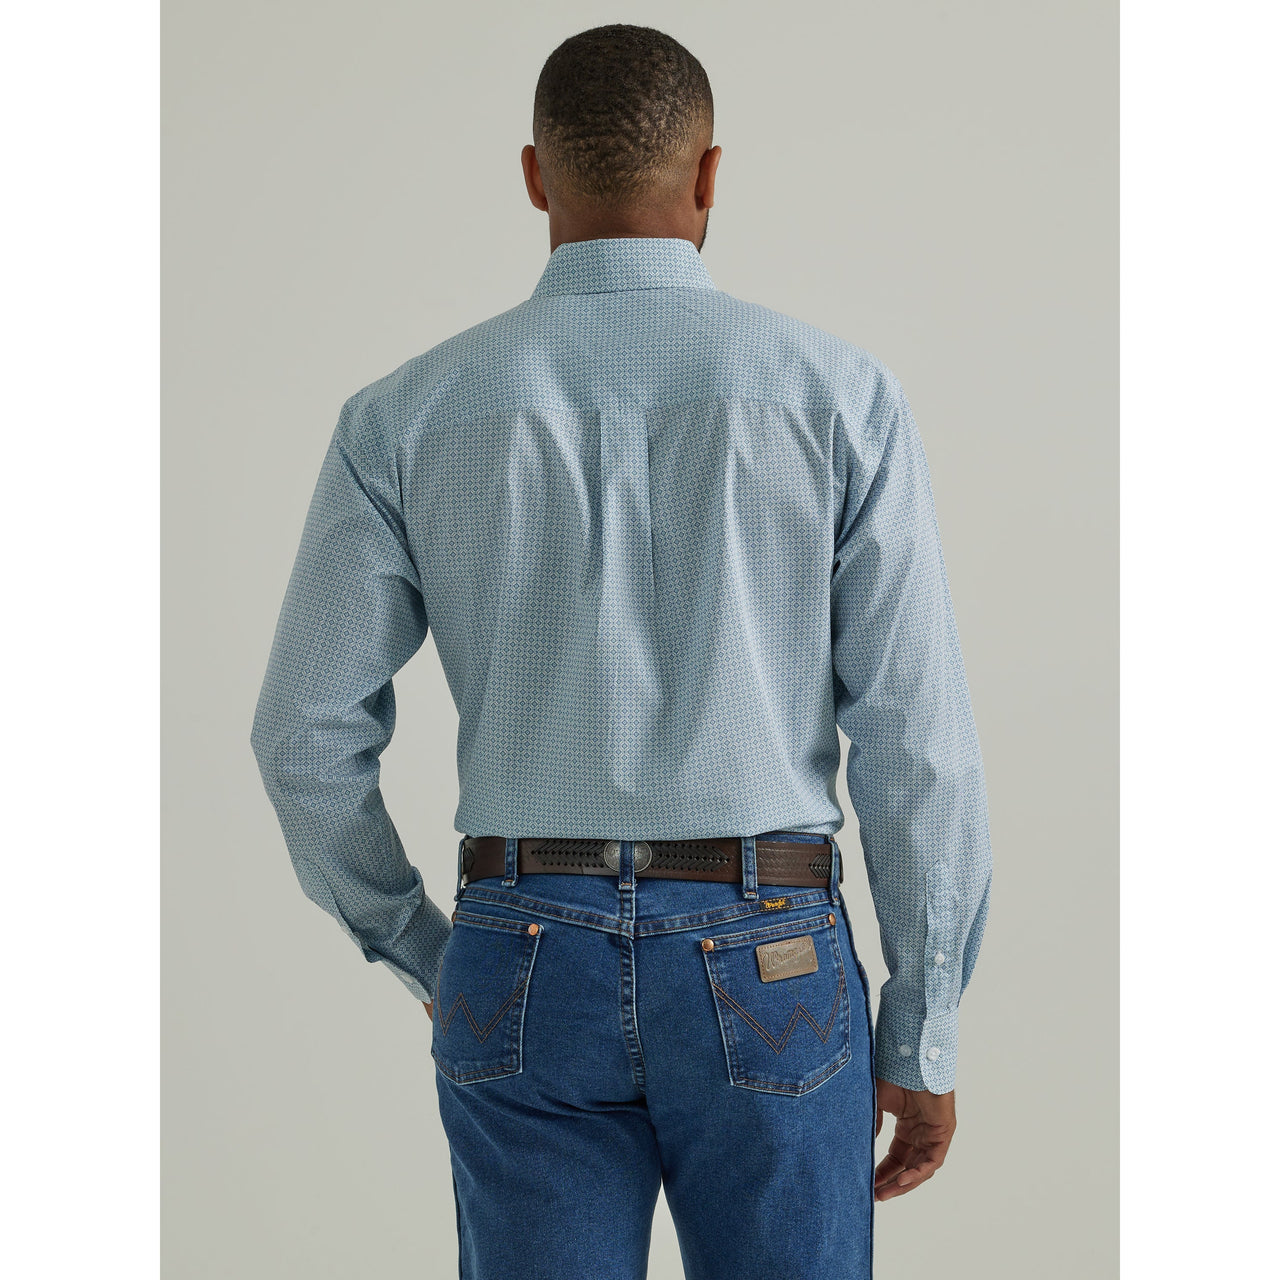 Wrangler Men's George Strait Long Sleeve Print Shirt - Blue